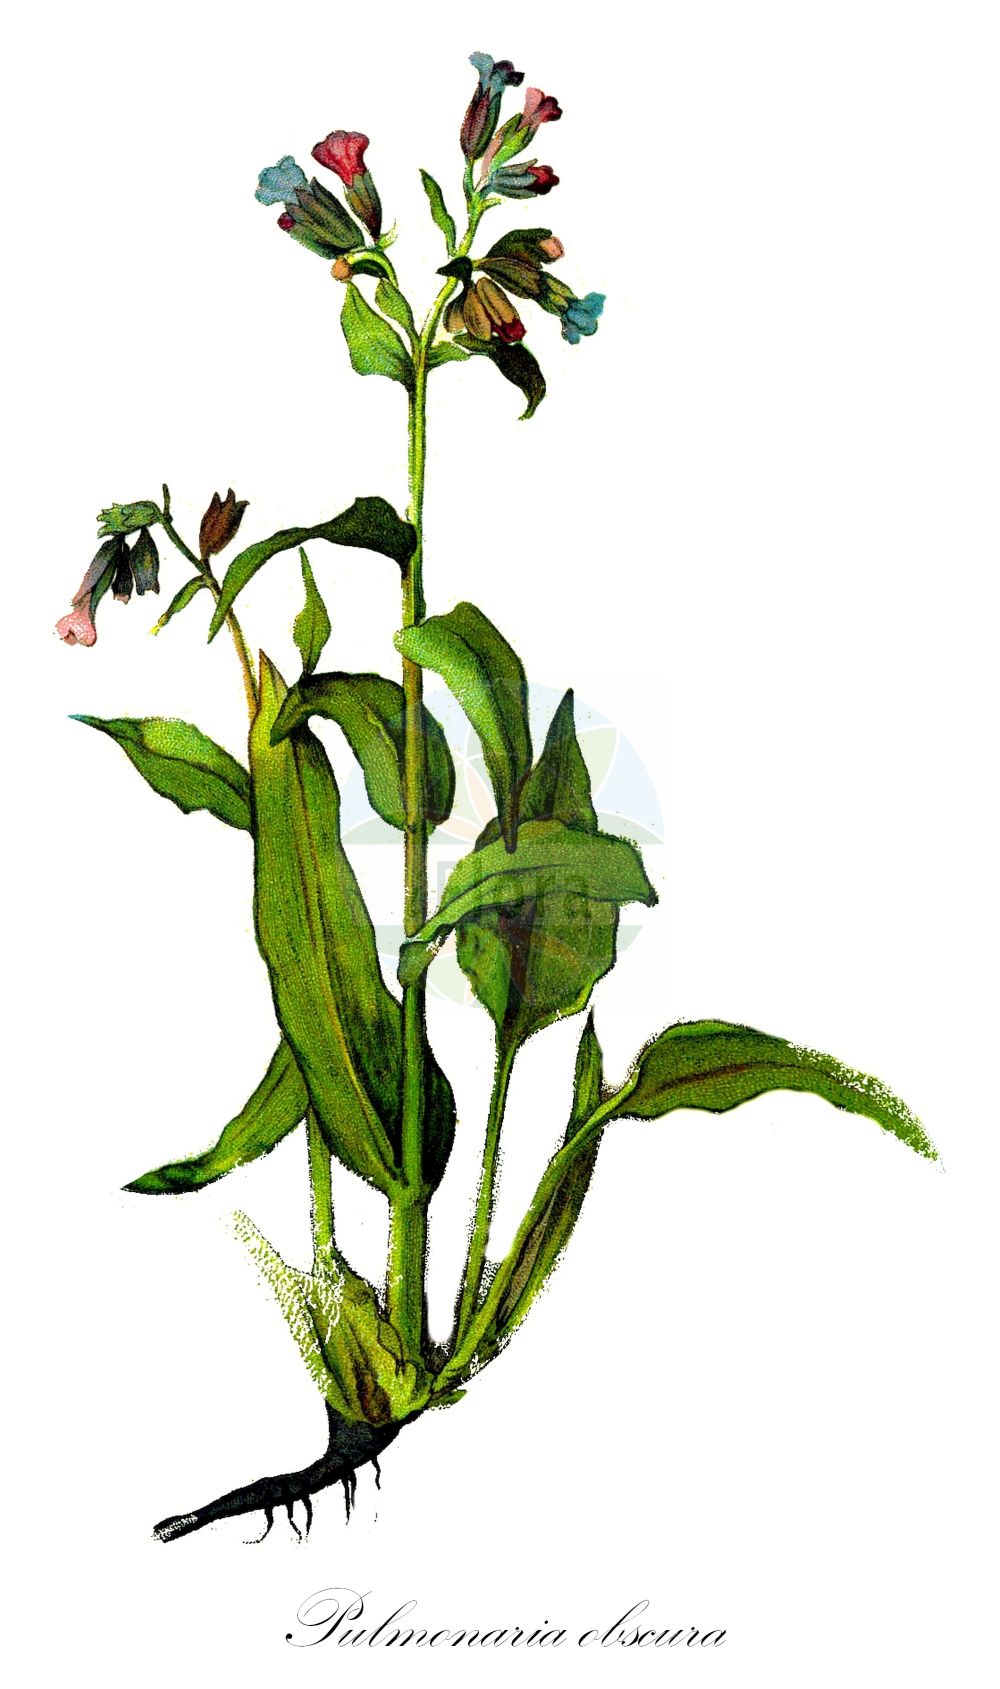 Historische Abbildung von Pulmonaria obscura (Dunkles Lungenkraut - Suffolk Lungwort). Das Bild zeigt Blatt, Bluete, Frucht und Same. ---- Historical Drawing of Pulmonaria obscura (Dunkles Lungenkraut - Suffolk Lungwort). The image is showing leaf, flower, fruit and seed.(Pulmonaria obscura,Dunkles Lungenkraut,Suffolk Lungwort,Pulmonaria obscura,Pulmonaria officinalis subsp. obscura,Dunkles Lungenkraut,Suffolk Lungwort,Unspotted Lungwort,Pulmonaria,Lungenkraut,Lungwort,Boraginaceae,Raublattgewächse,Forget-me-Not family,Blatt,Bluete,Frucht,Same,leaf,flower,fruit,seed,Oltmanns (1927))